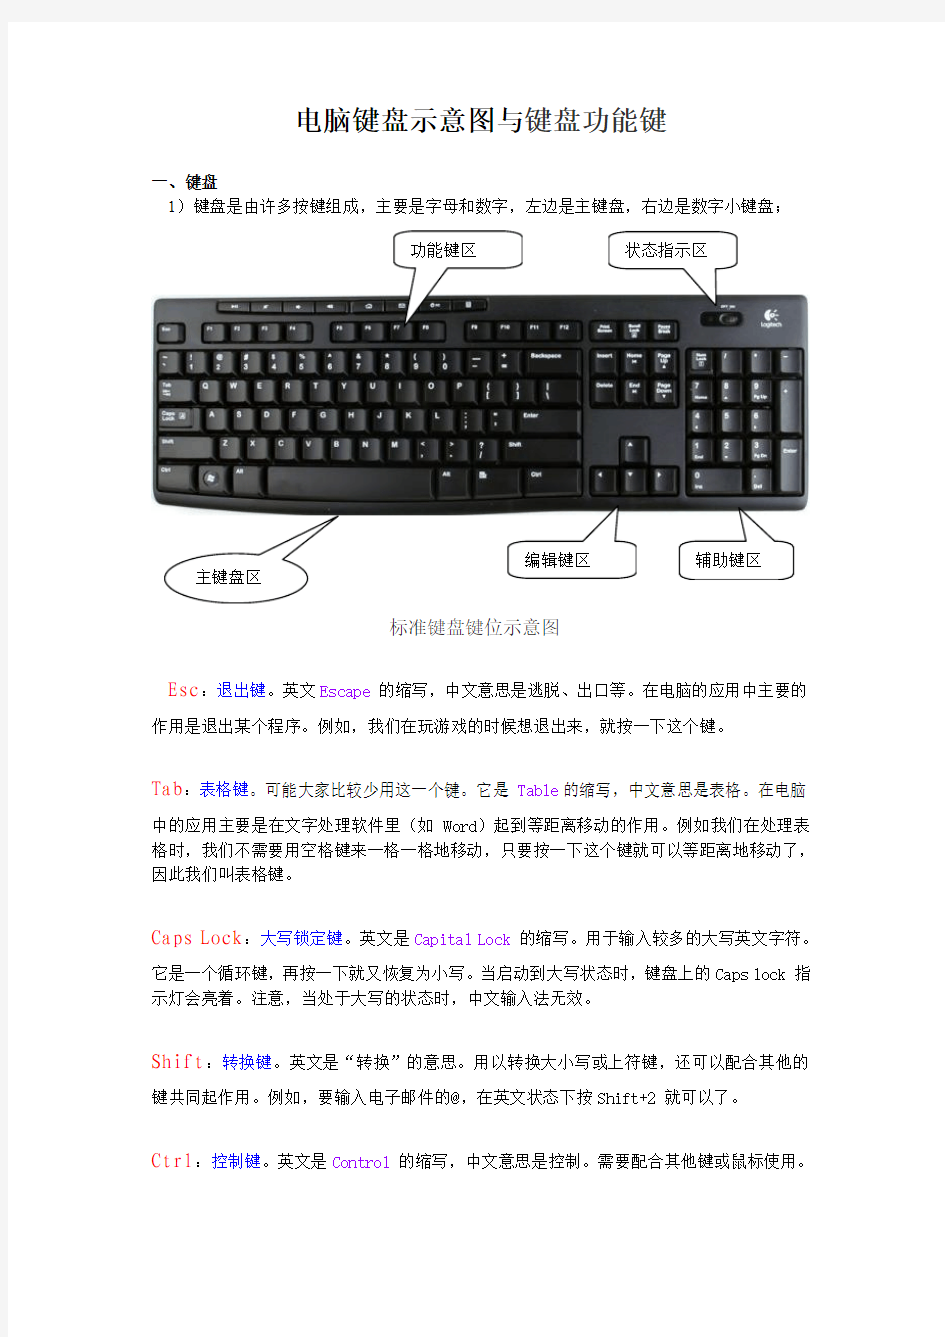 电脑键盘示意图与键盘功能键